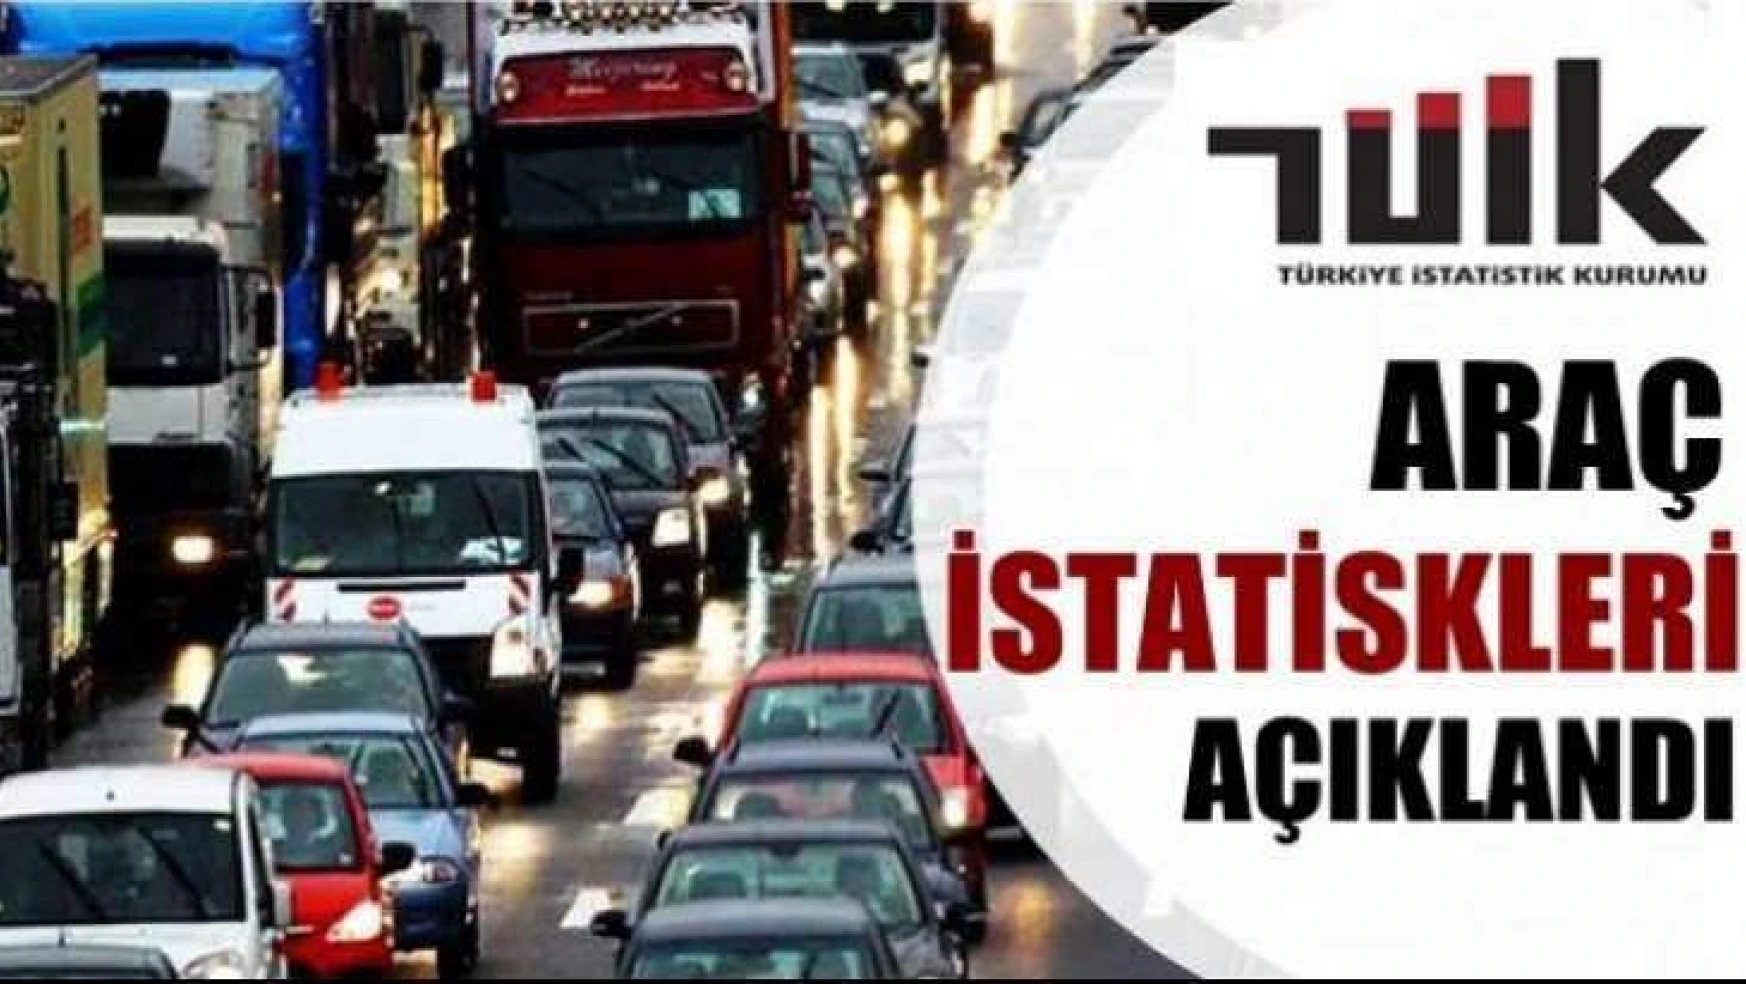 Malatya'da trafiğe kayıtlı araç sayısı Nisan ayı sonu itibarıyla 174 354 oldu.